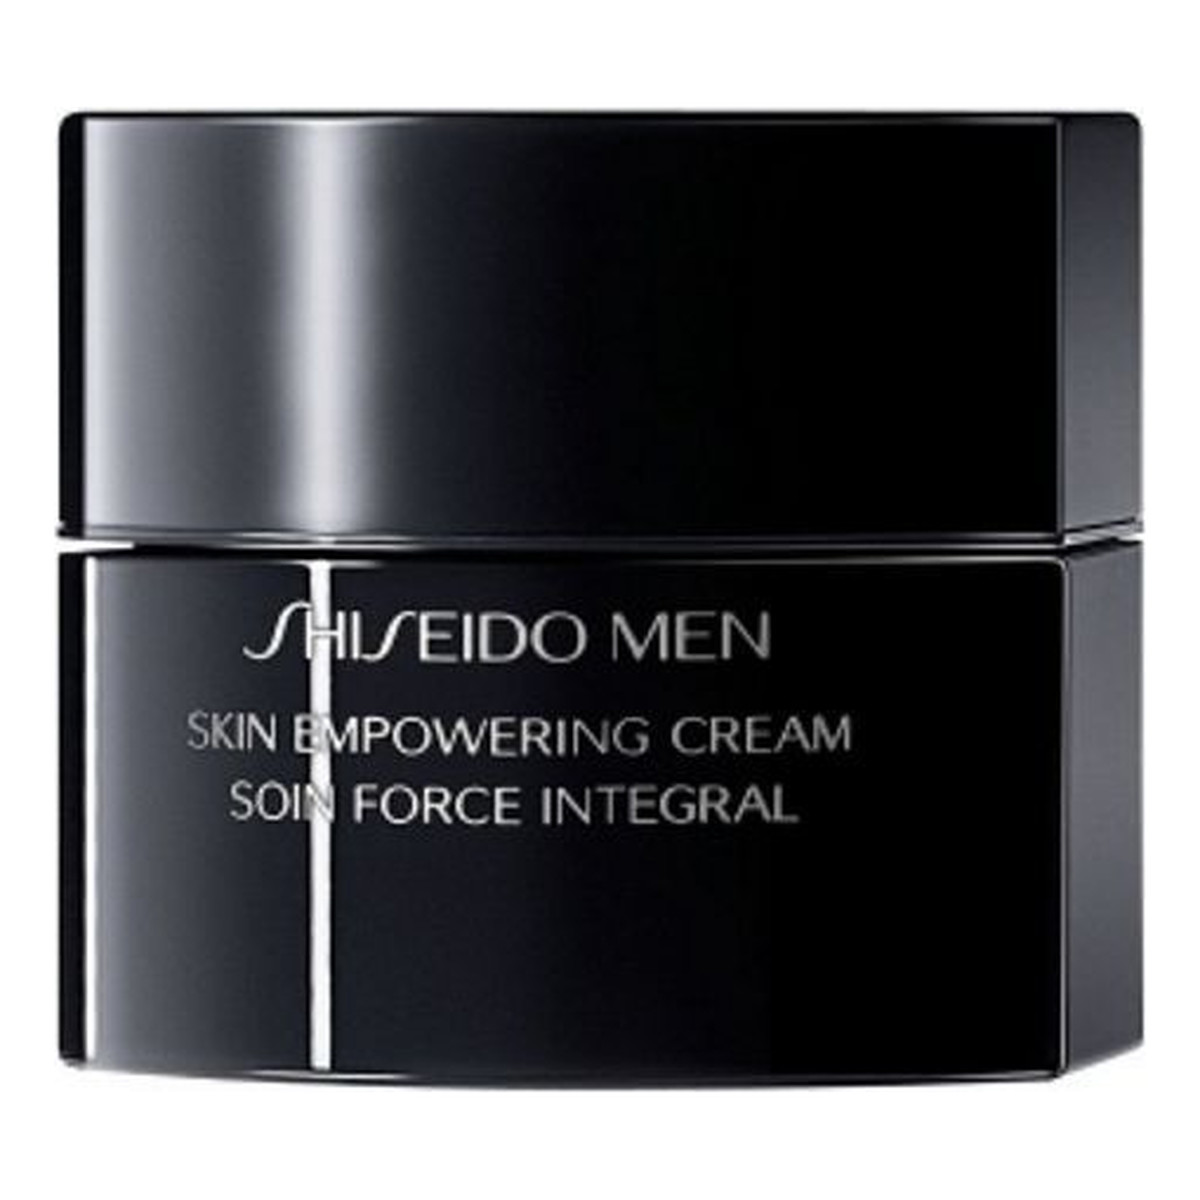 Shiseido Men Skin Empowering Cream Krem wzmacniający do cery zmęczonej 50ml